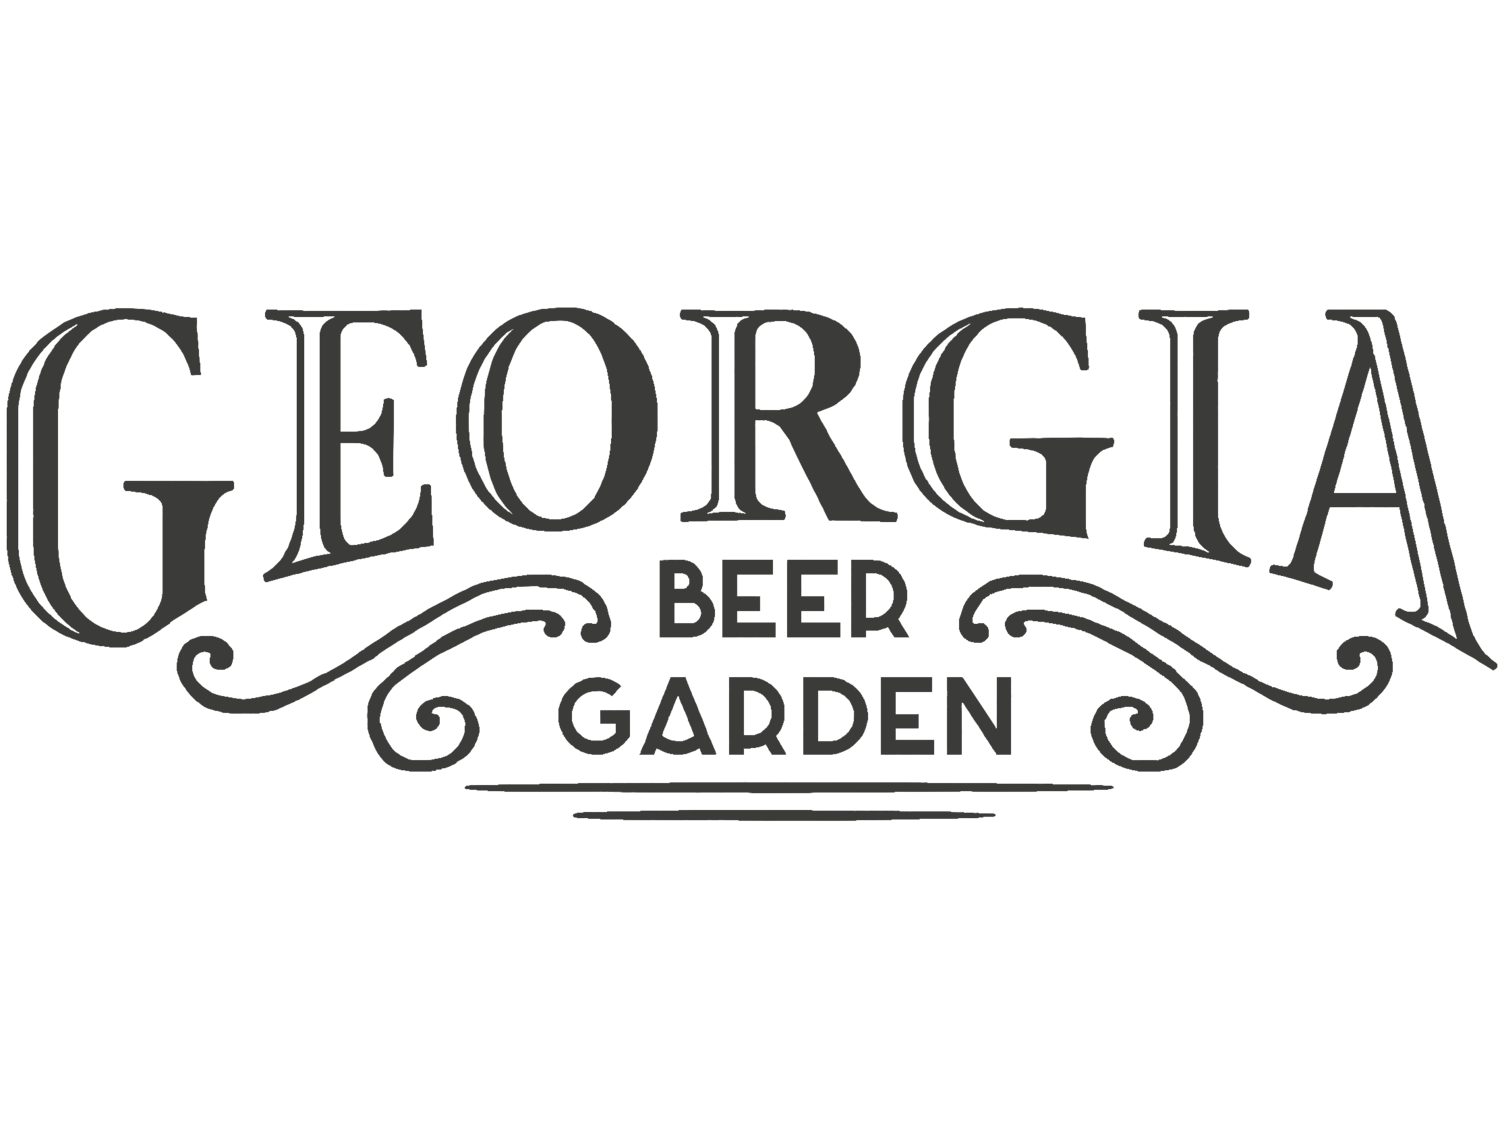 Georgia Beer Garden